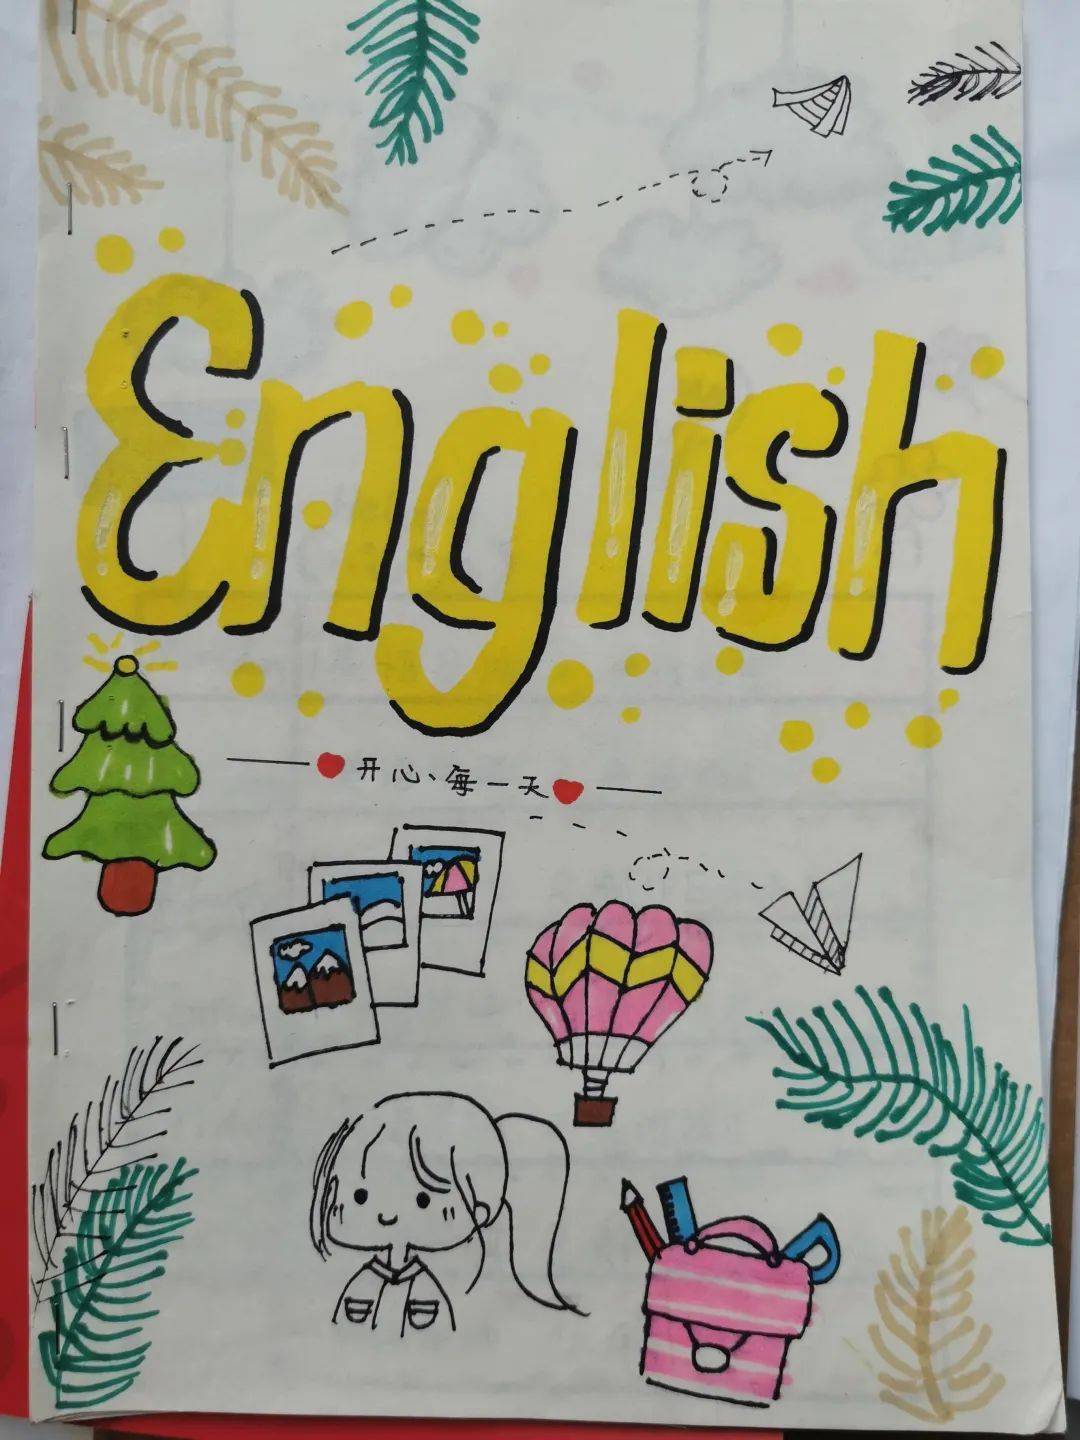 英语作业封面手绘图片